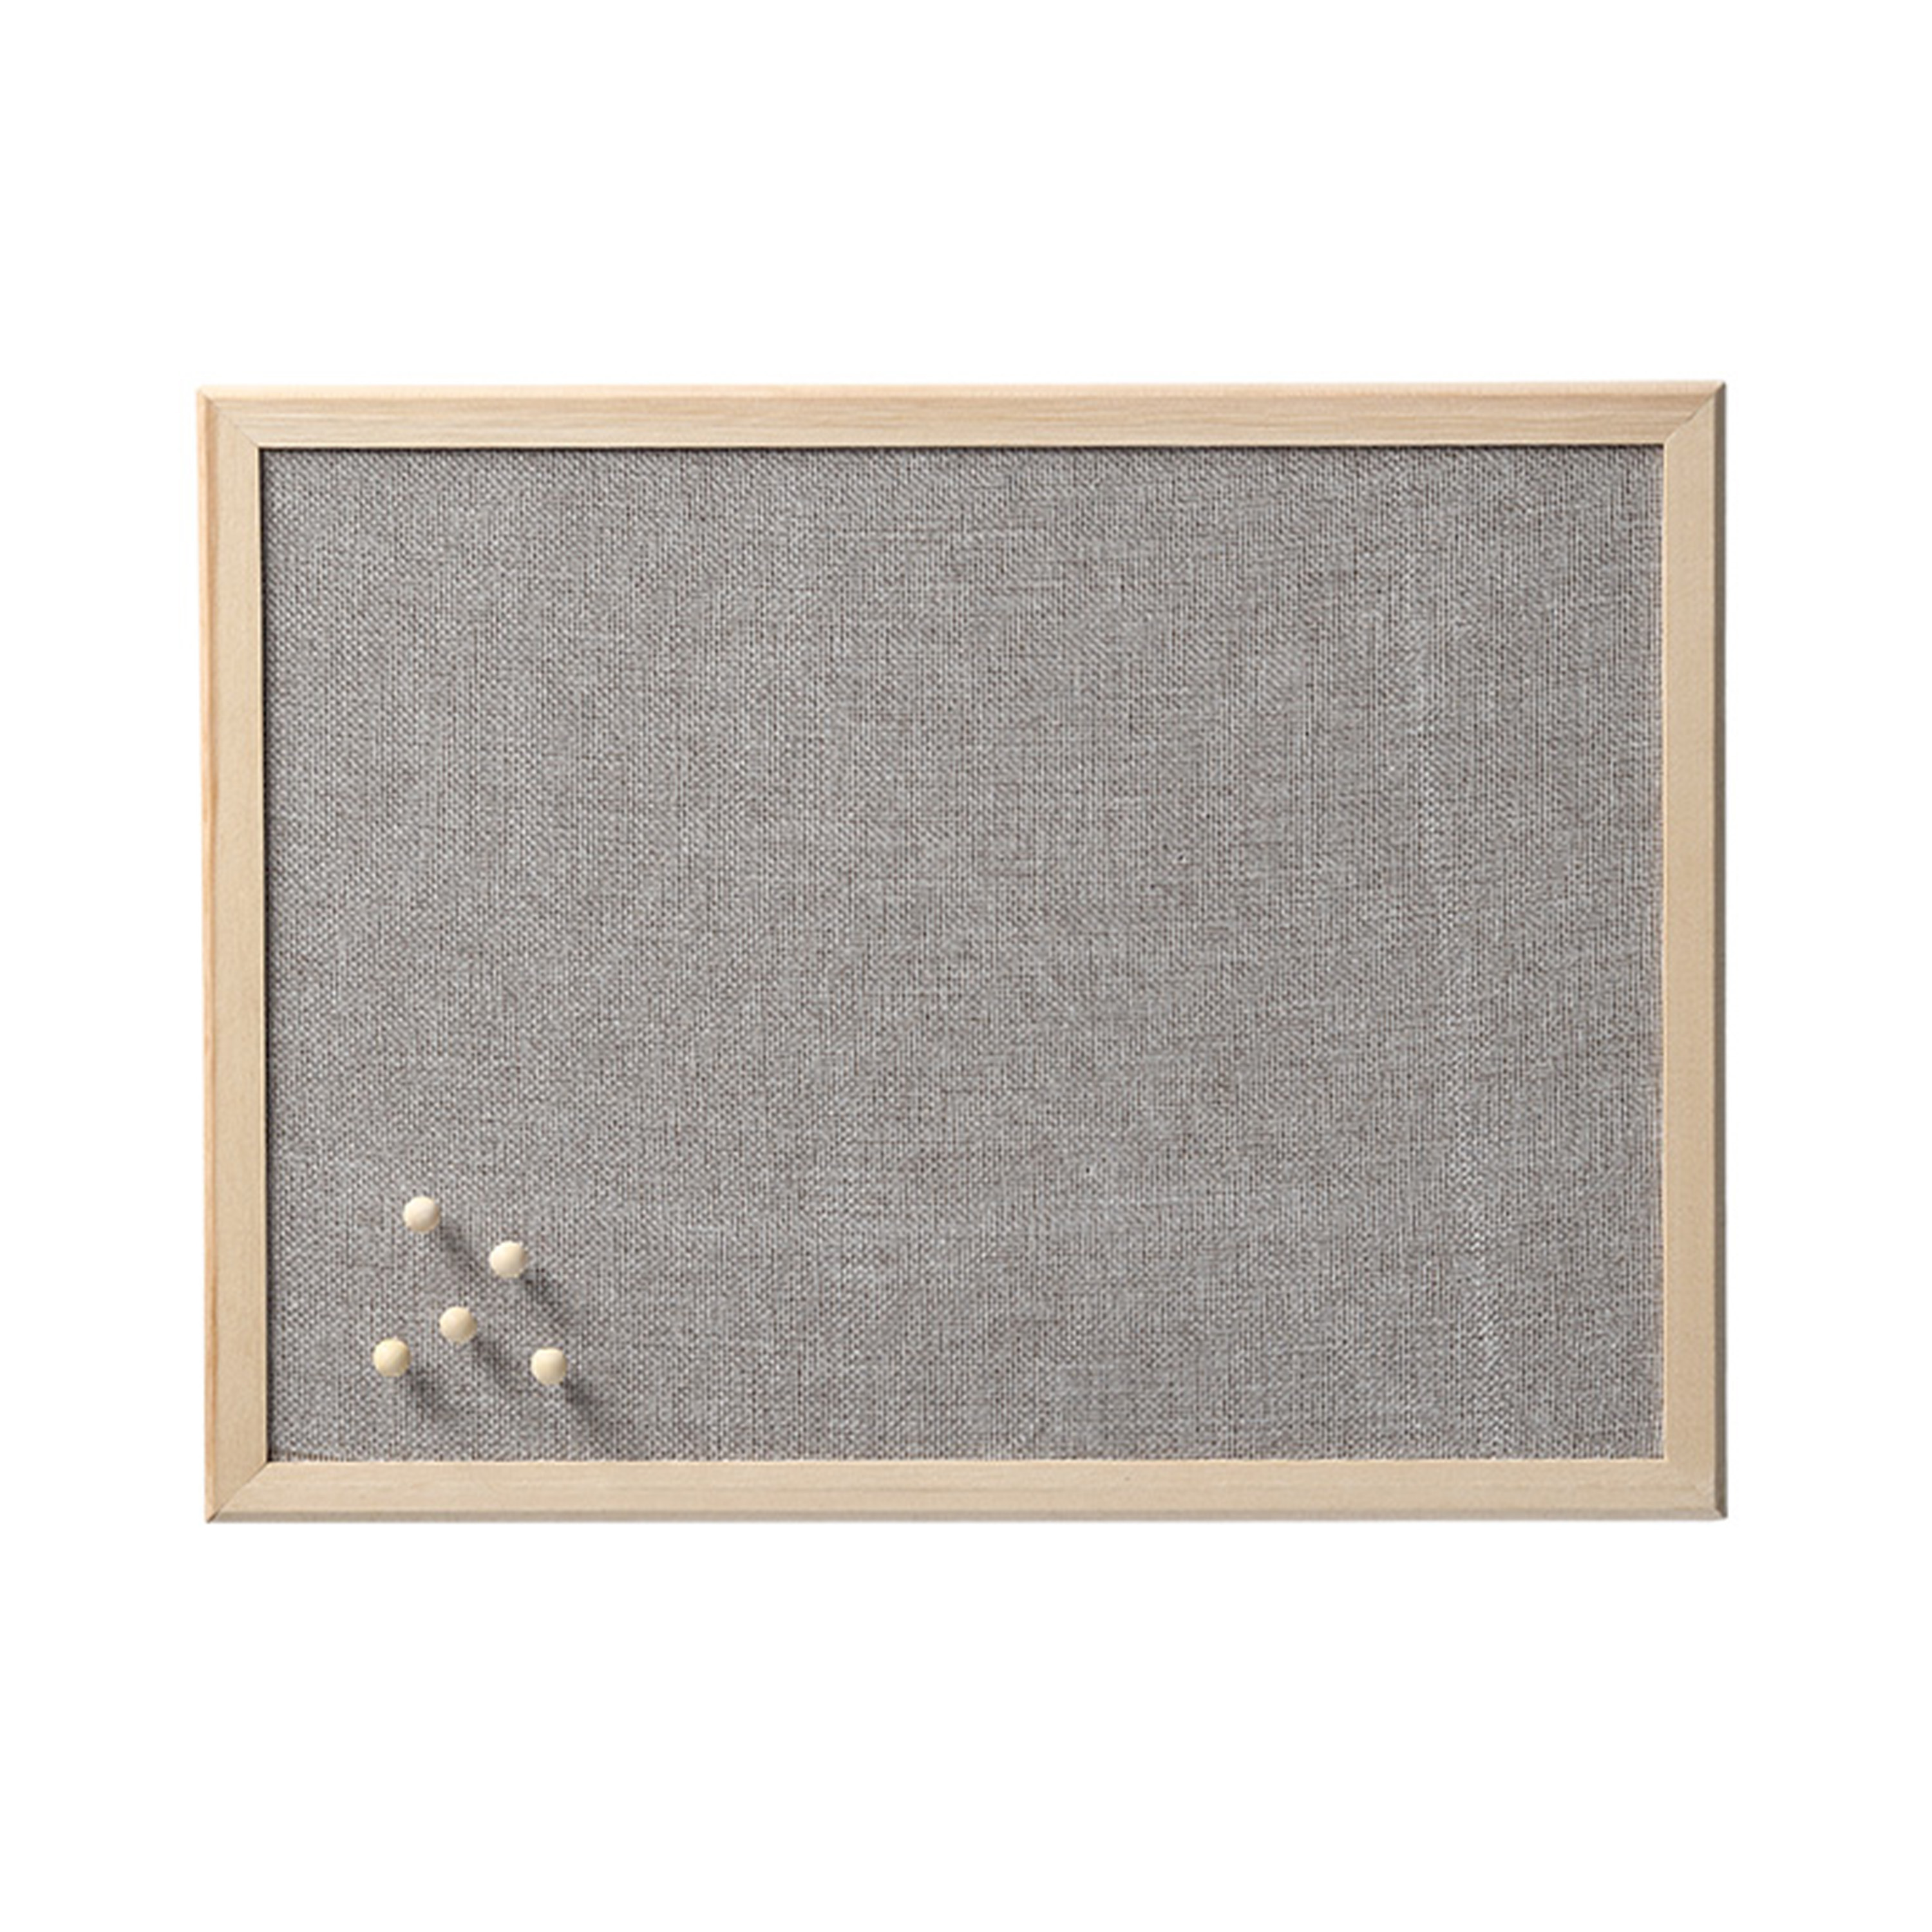 Prikbord textiel lichtgrijs 30 x 40 cm incl. punaises luxe